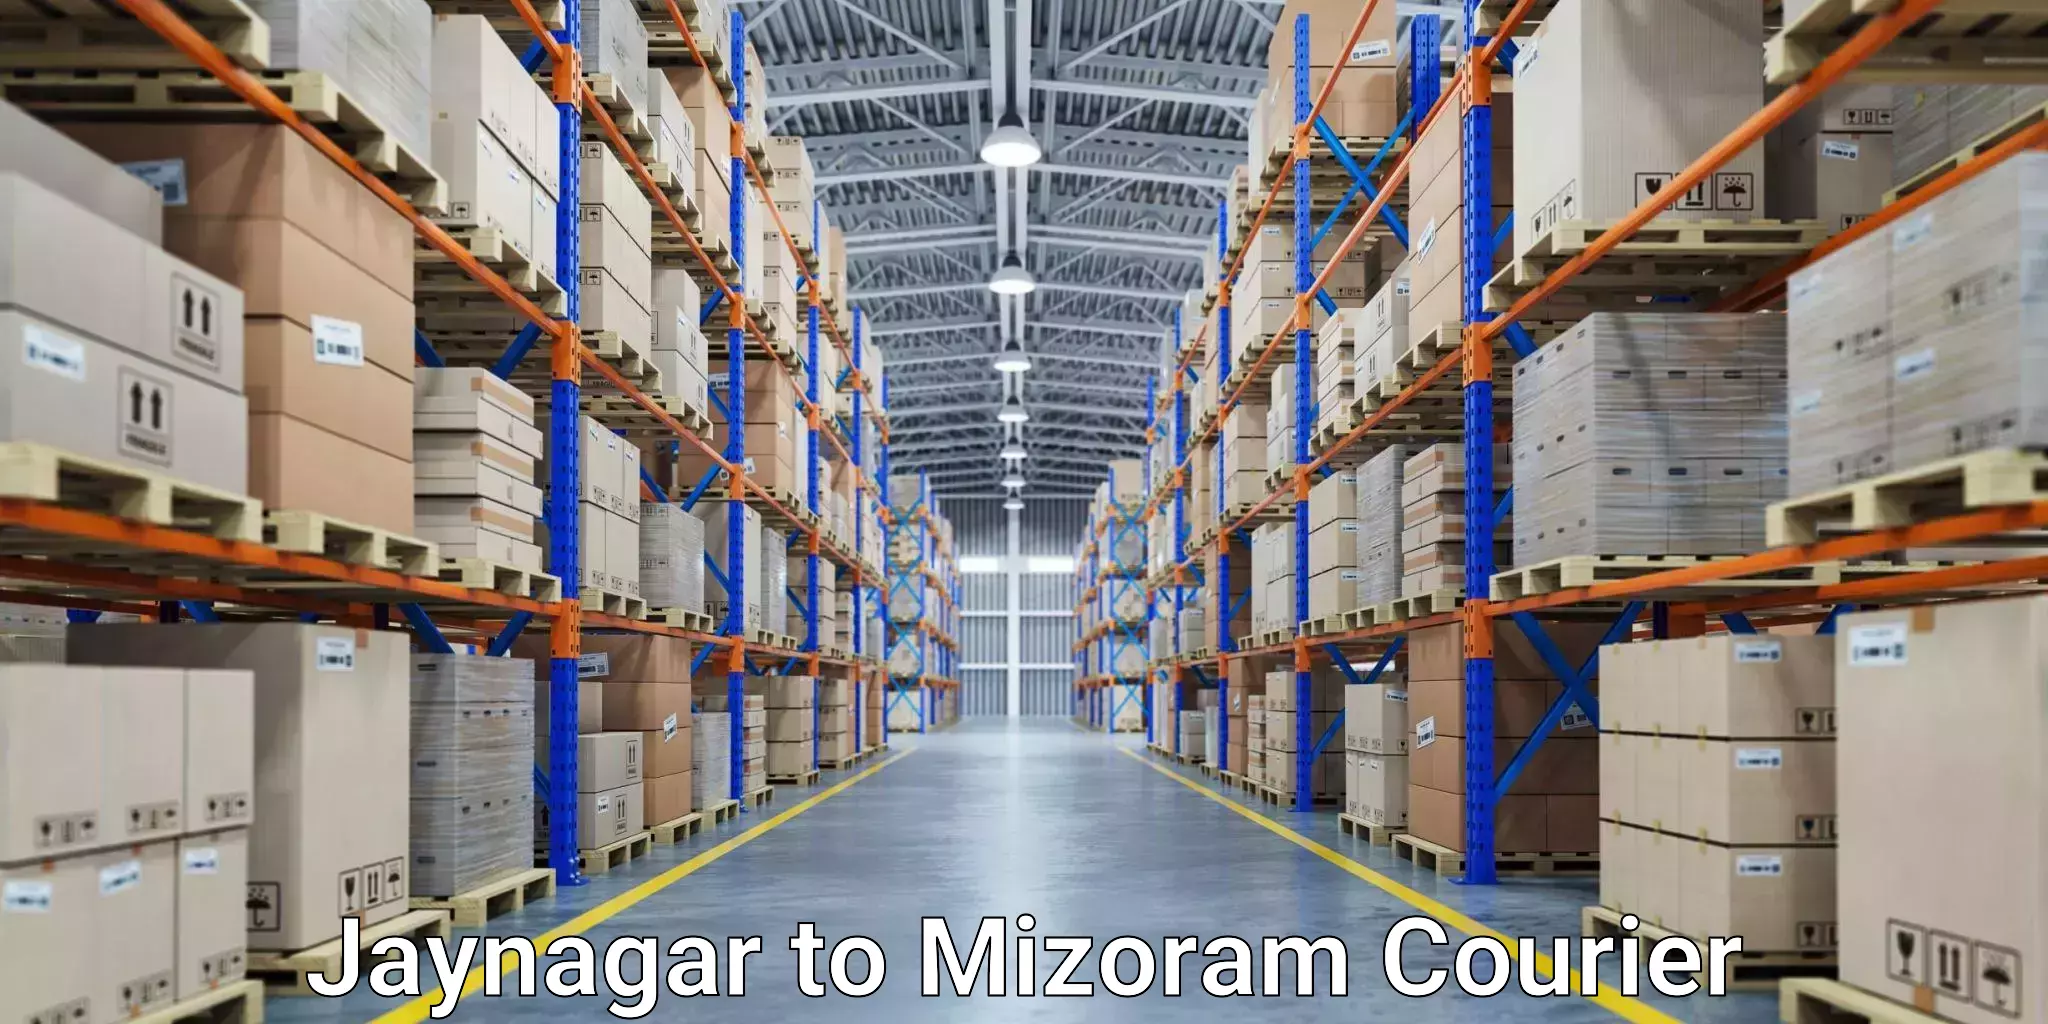 Cargo courier service Jaynagar to Aizawl